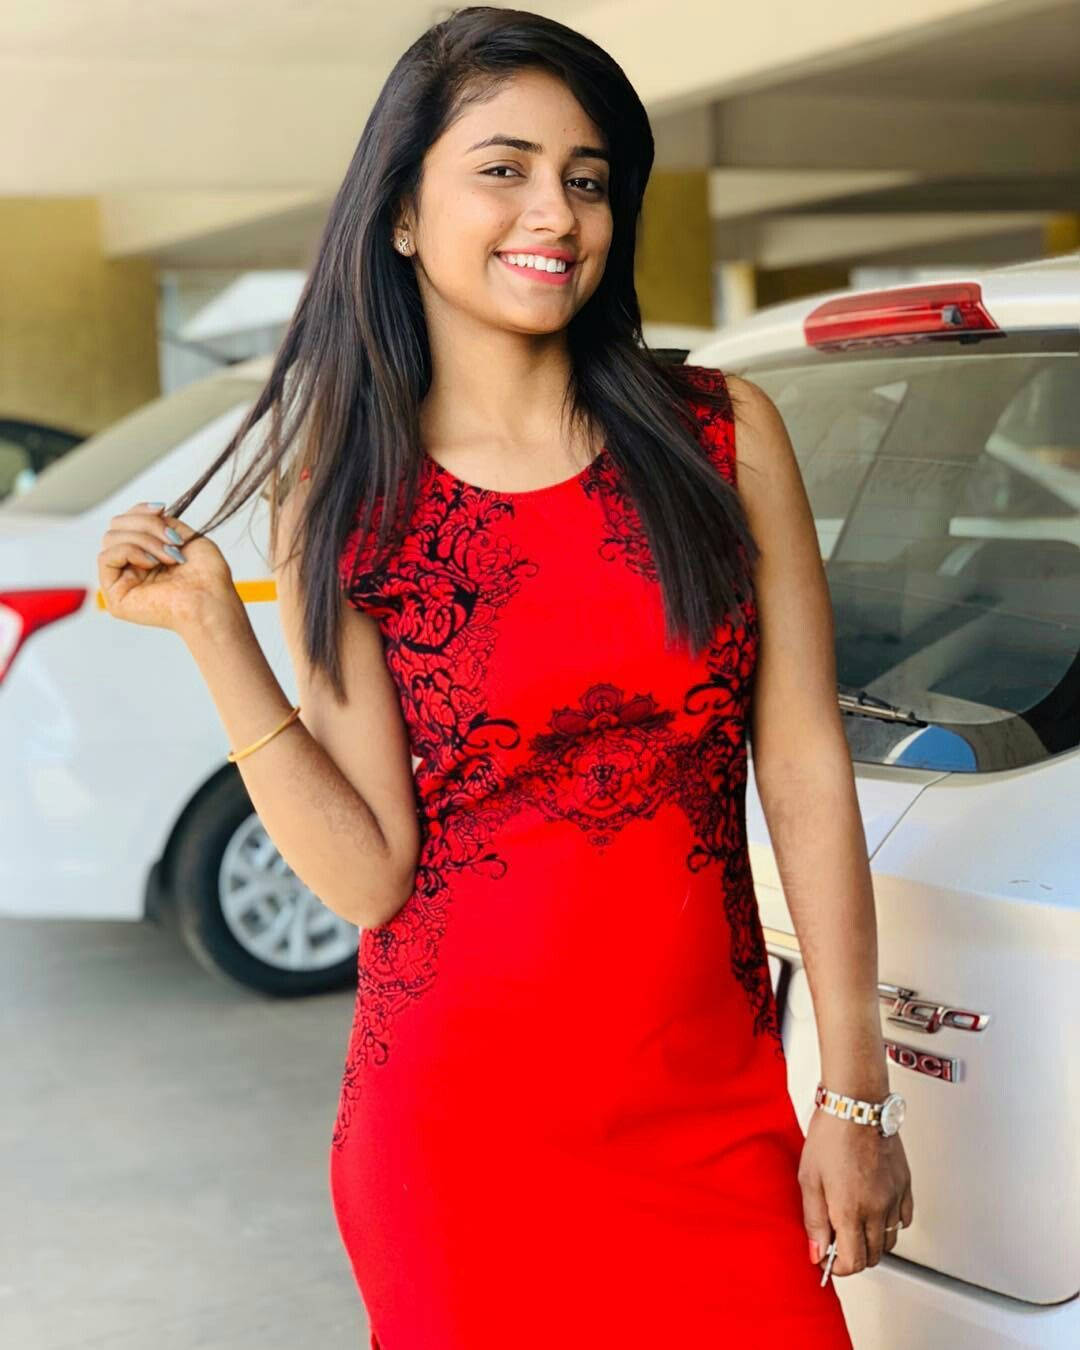 Nisha Guragain Wearing A Red Dress Background